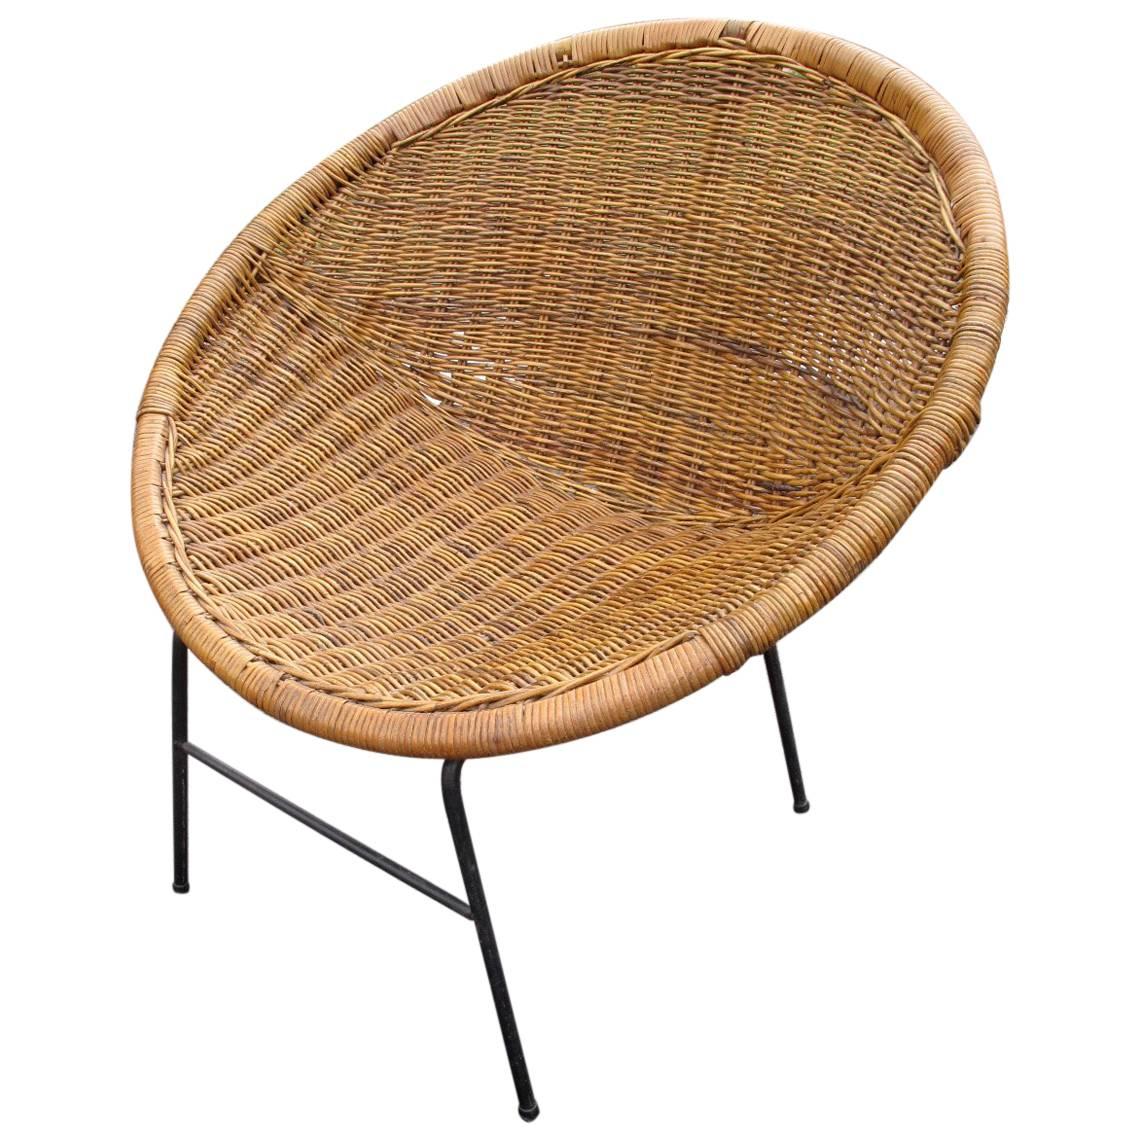 Woven Rattan Saucer Chair